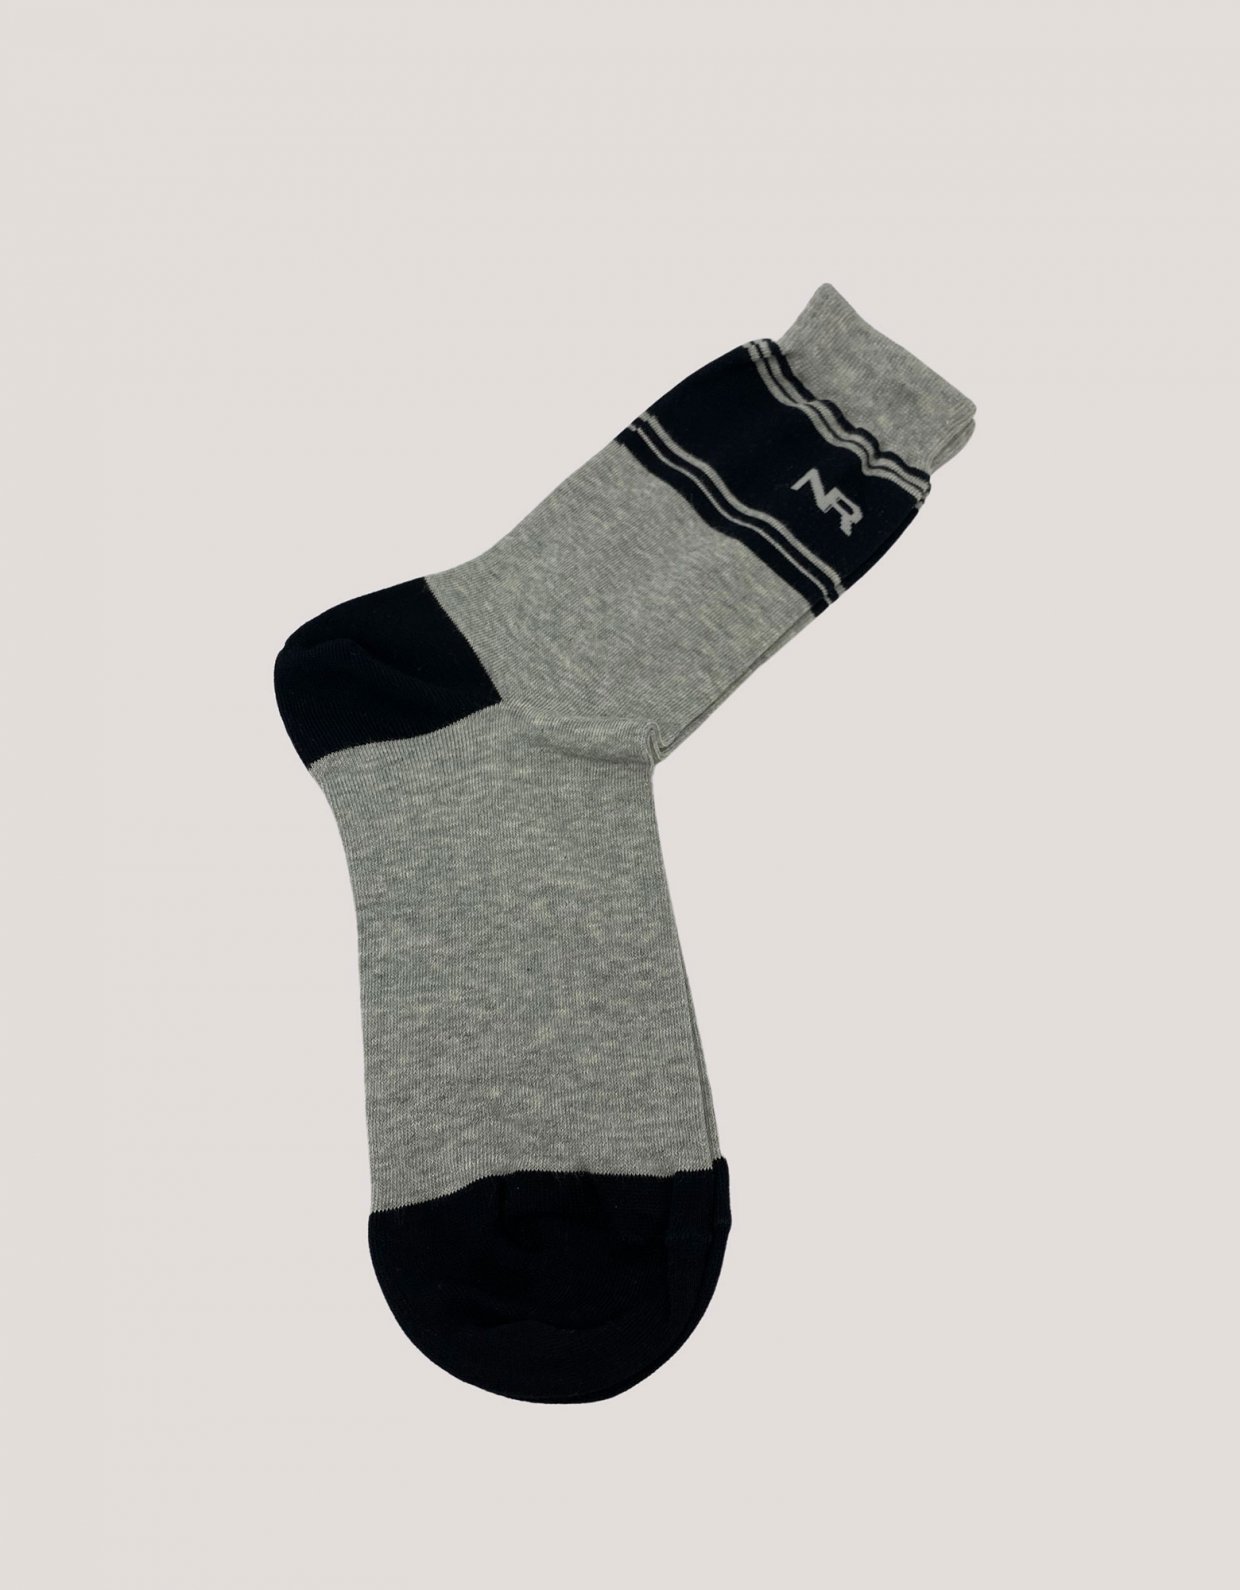 Nadia Rapti Stripes n logo socks grey